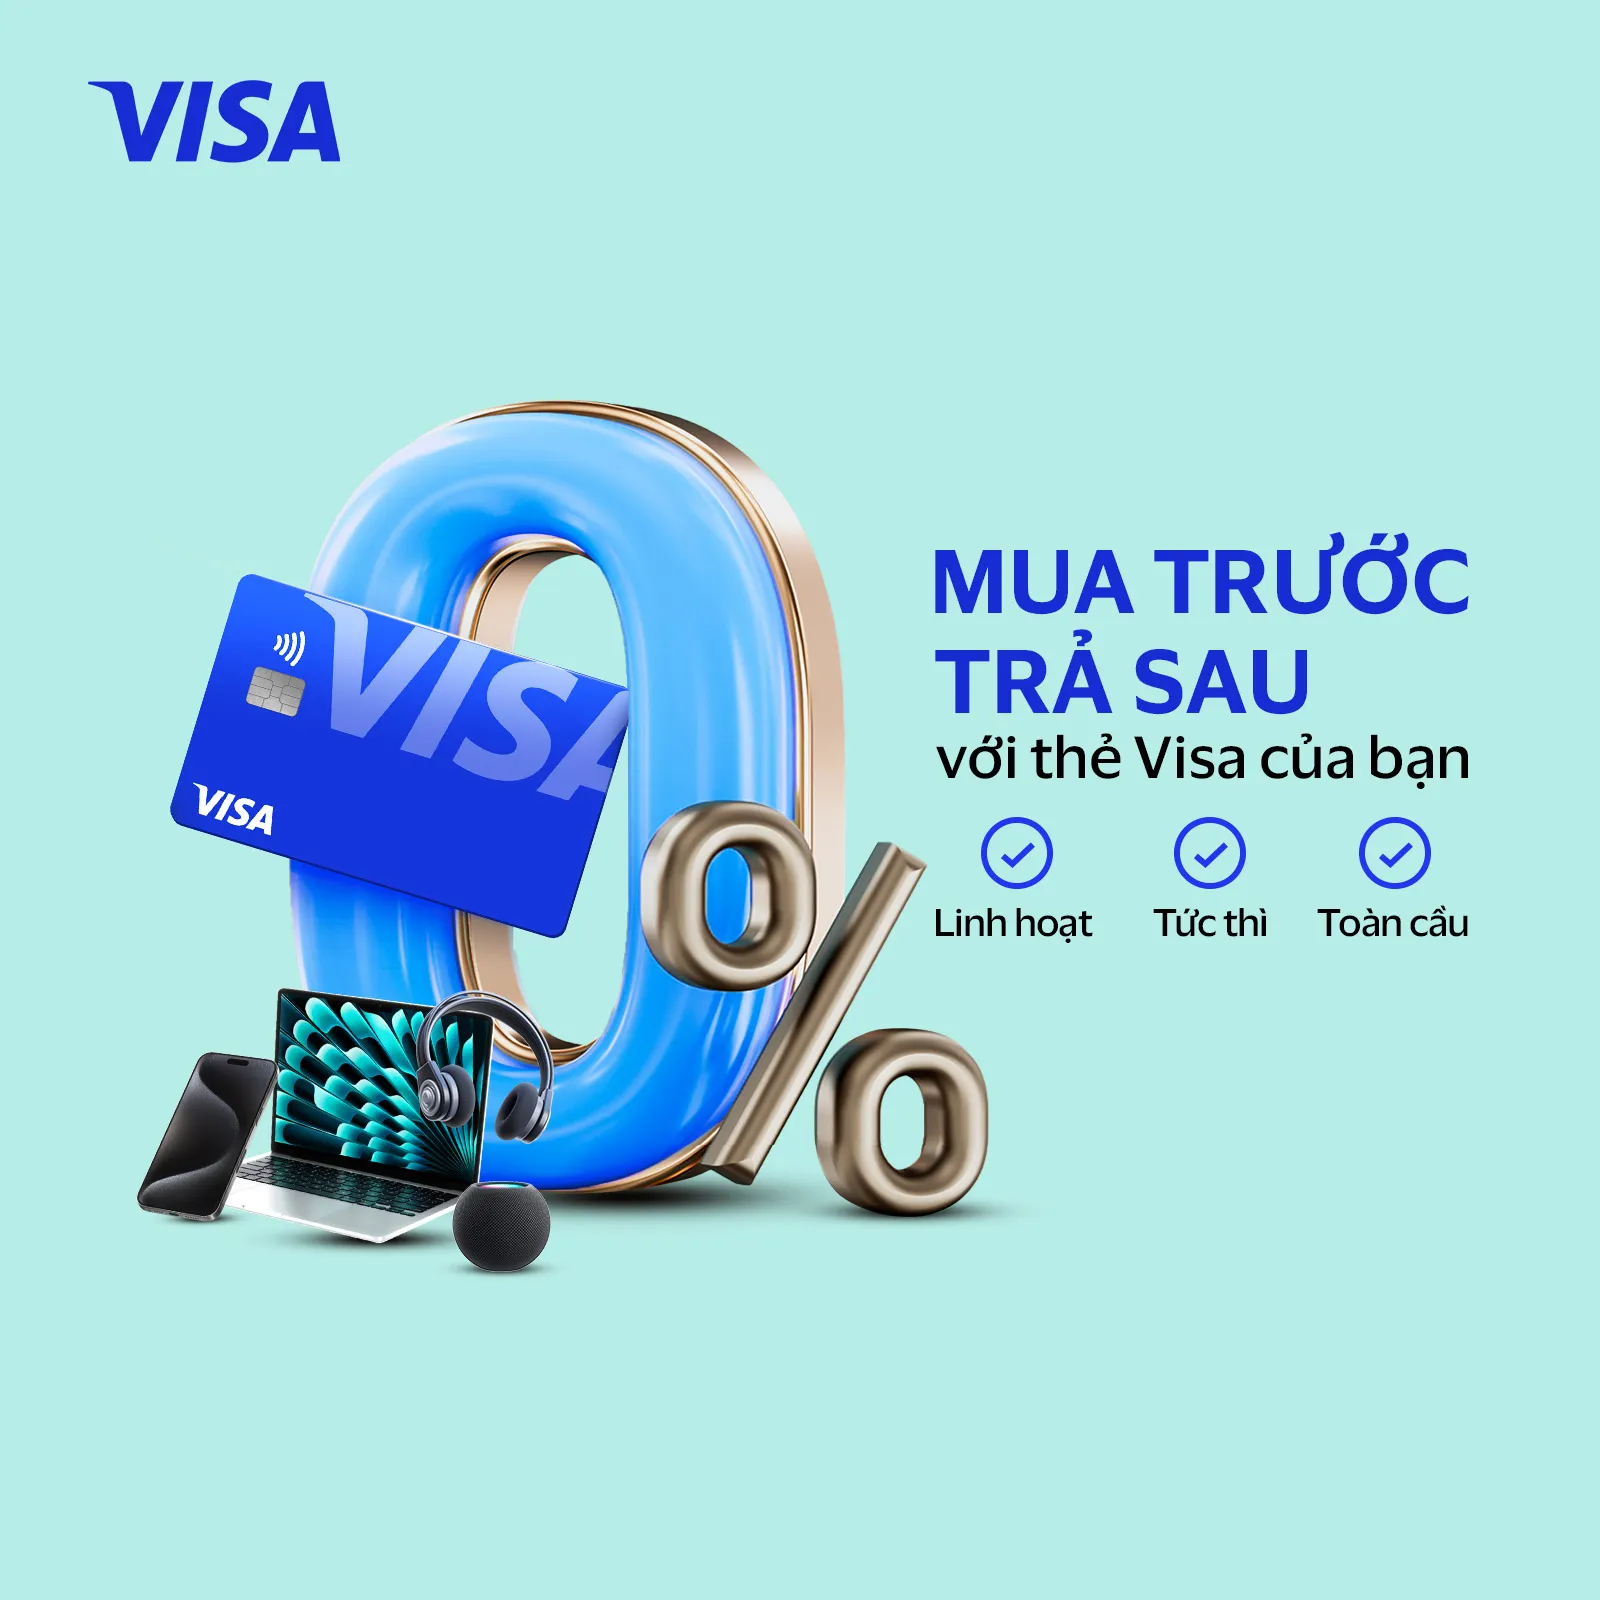 Visa phát triển tài chính toàn diện tại Việt Nam với Giải pháp Trả góp